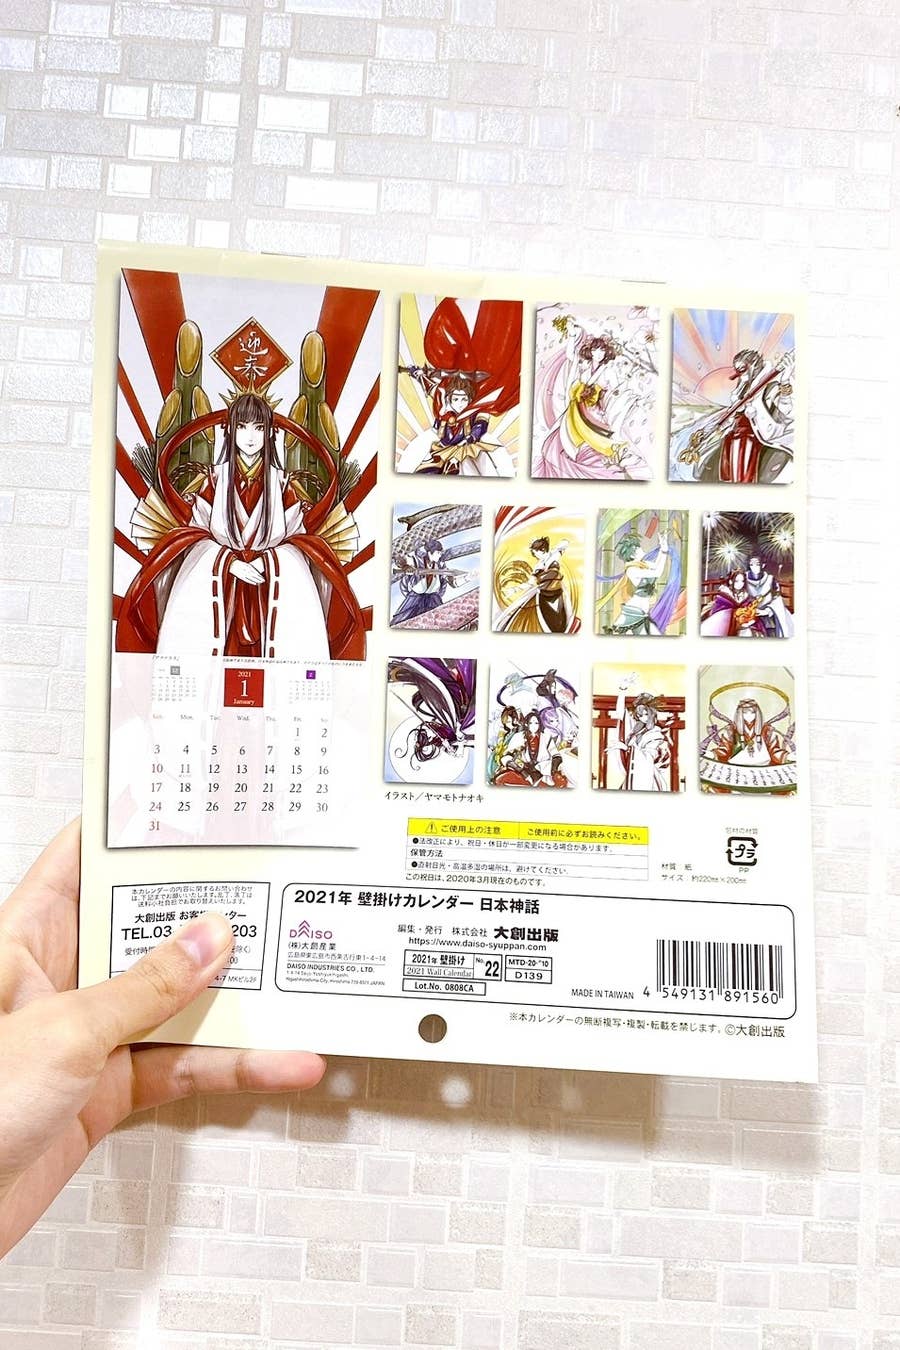 ご利益ありそう ダイソーでみつけた 日本神話カレンダー 神々のイラストが美しすぎるよ